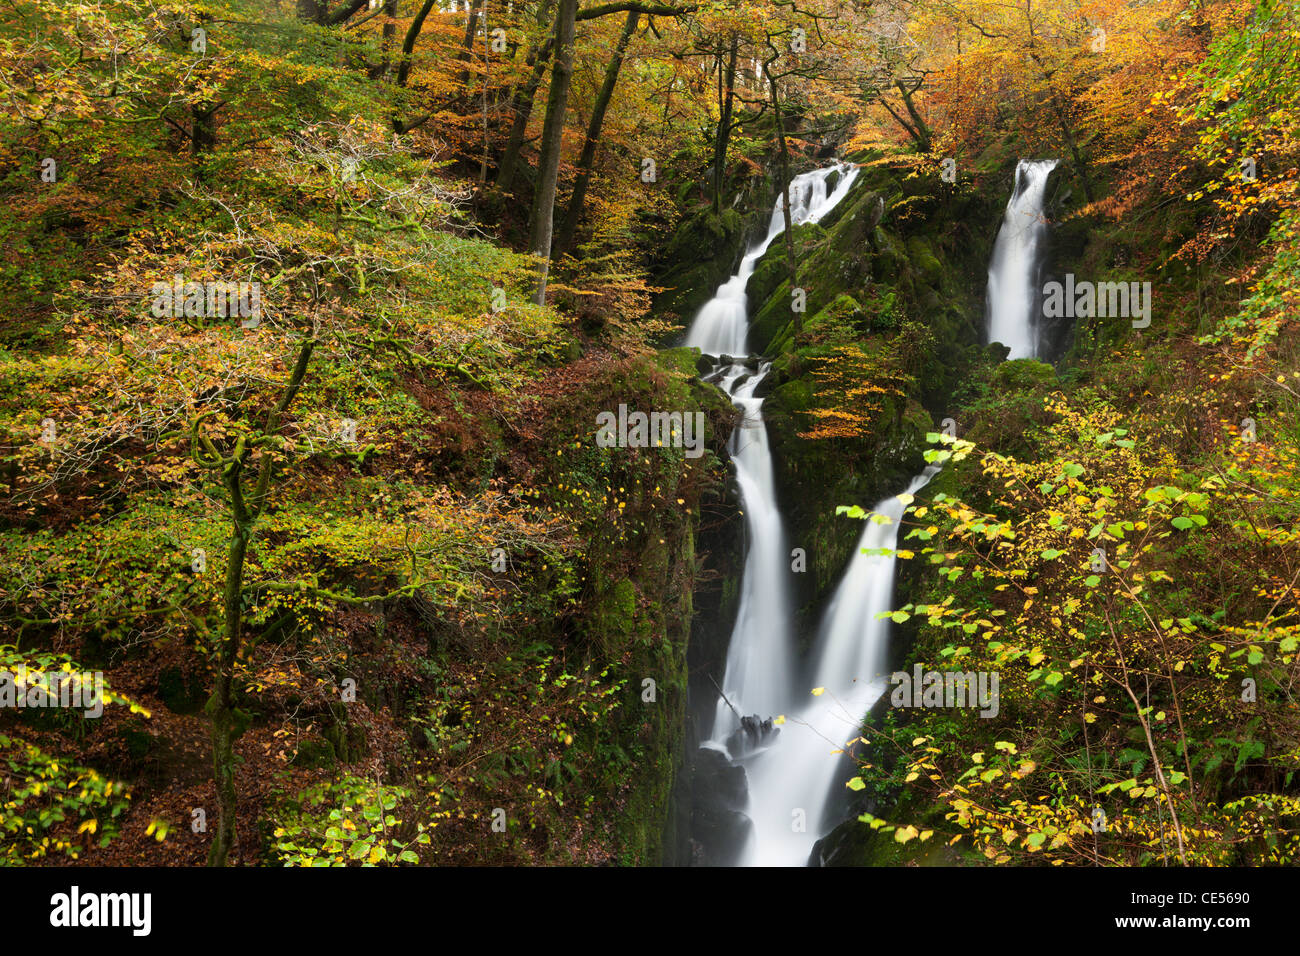 Ghyll Stock vigueur cascade bordée de feuillage de l'automne, Ambleside, Lake District, Cumbria, Angleterre. L'automne (novembre) 2011. Banque D'Images